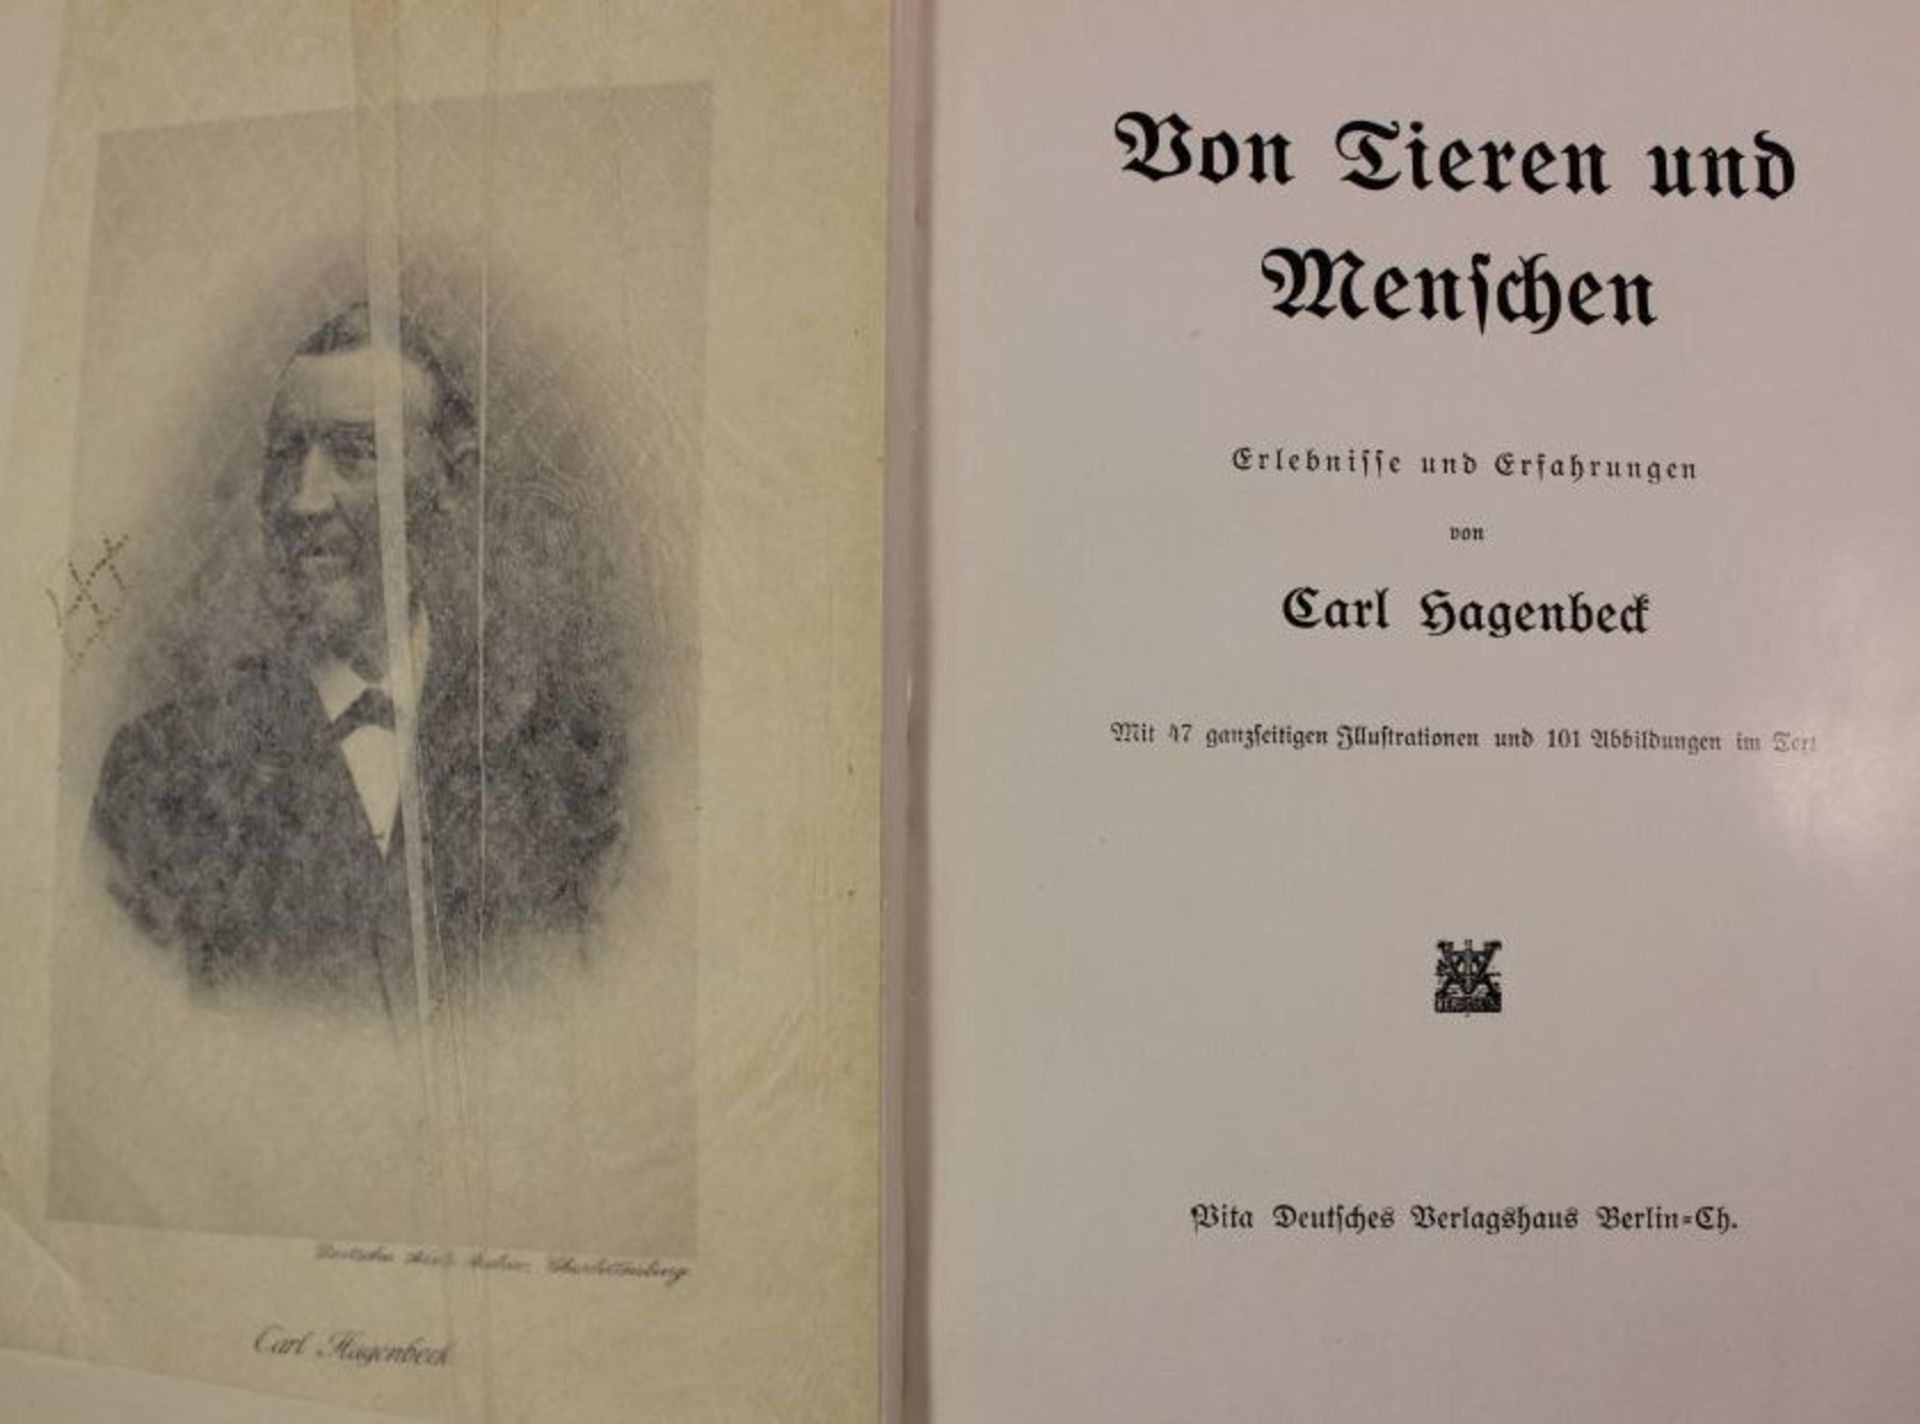 Von Tieren und Menschen - Erlebnisse und Erfahrungen, Carl Hagenbeck, 1908, Alters-u. - Bild 2 aus 3